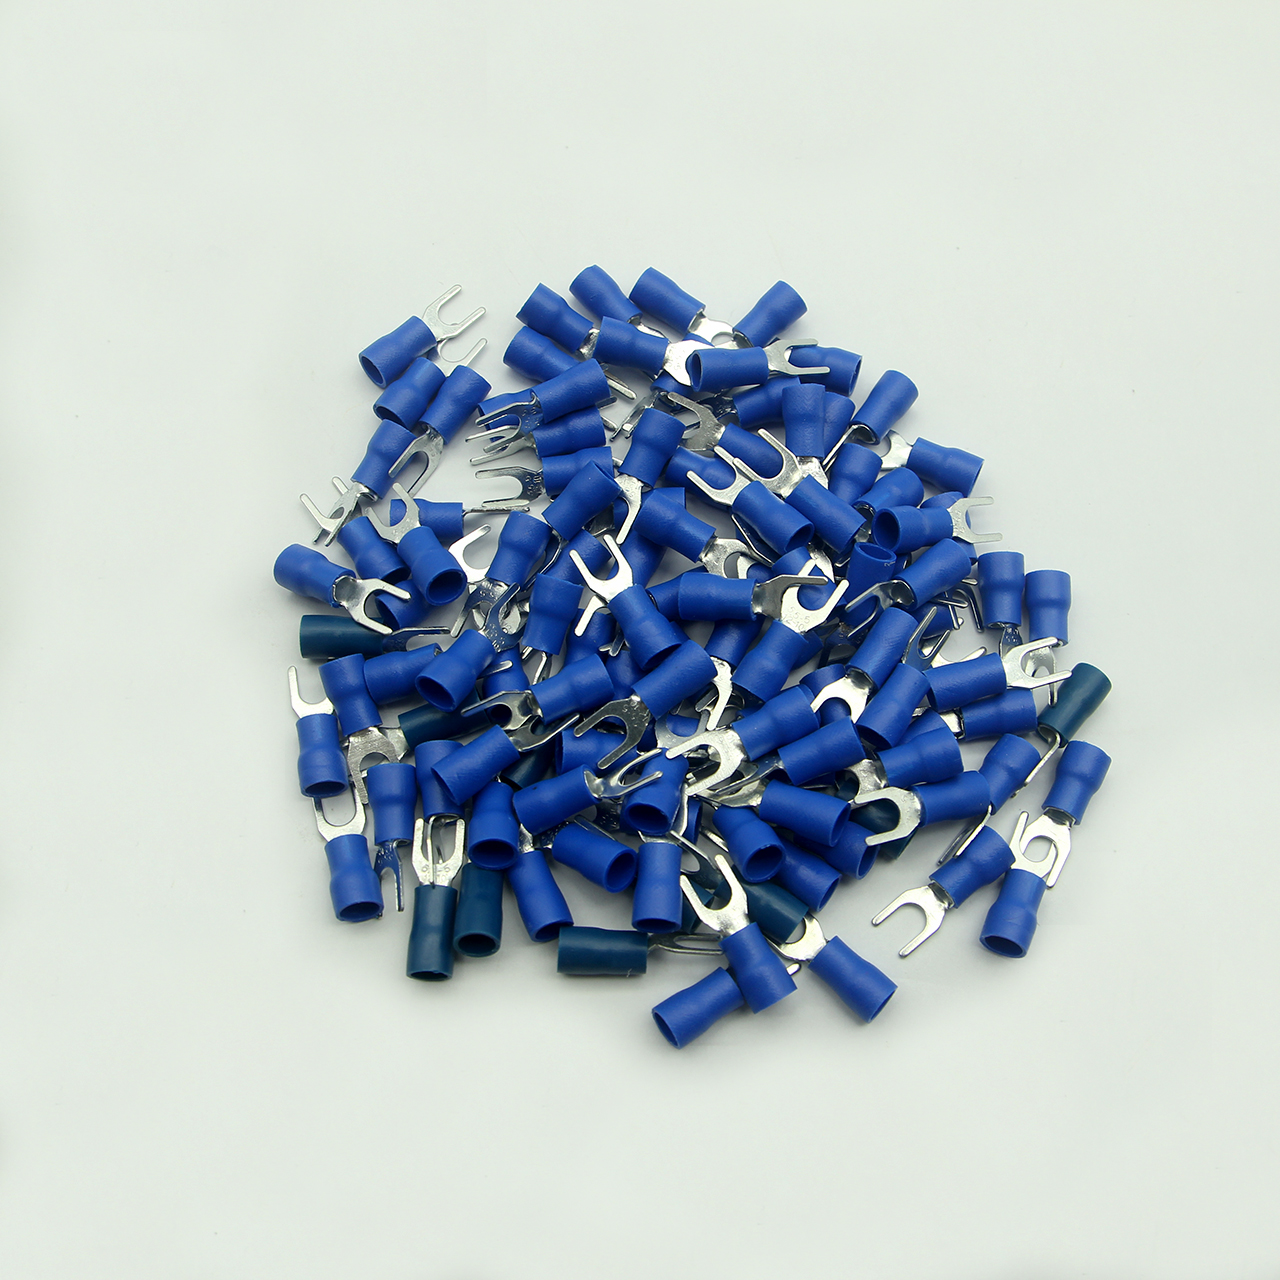 Túi 100 đầu cos chĩa chữ Y SV 5.5-5 bọc nhựa xanh